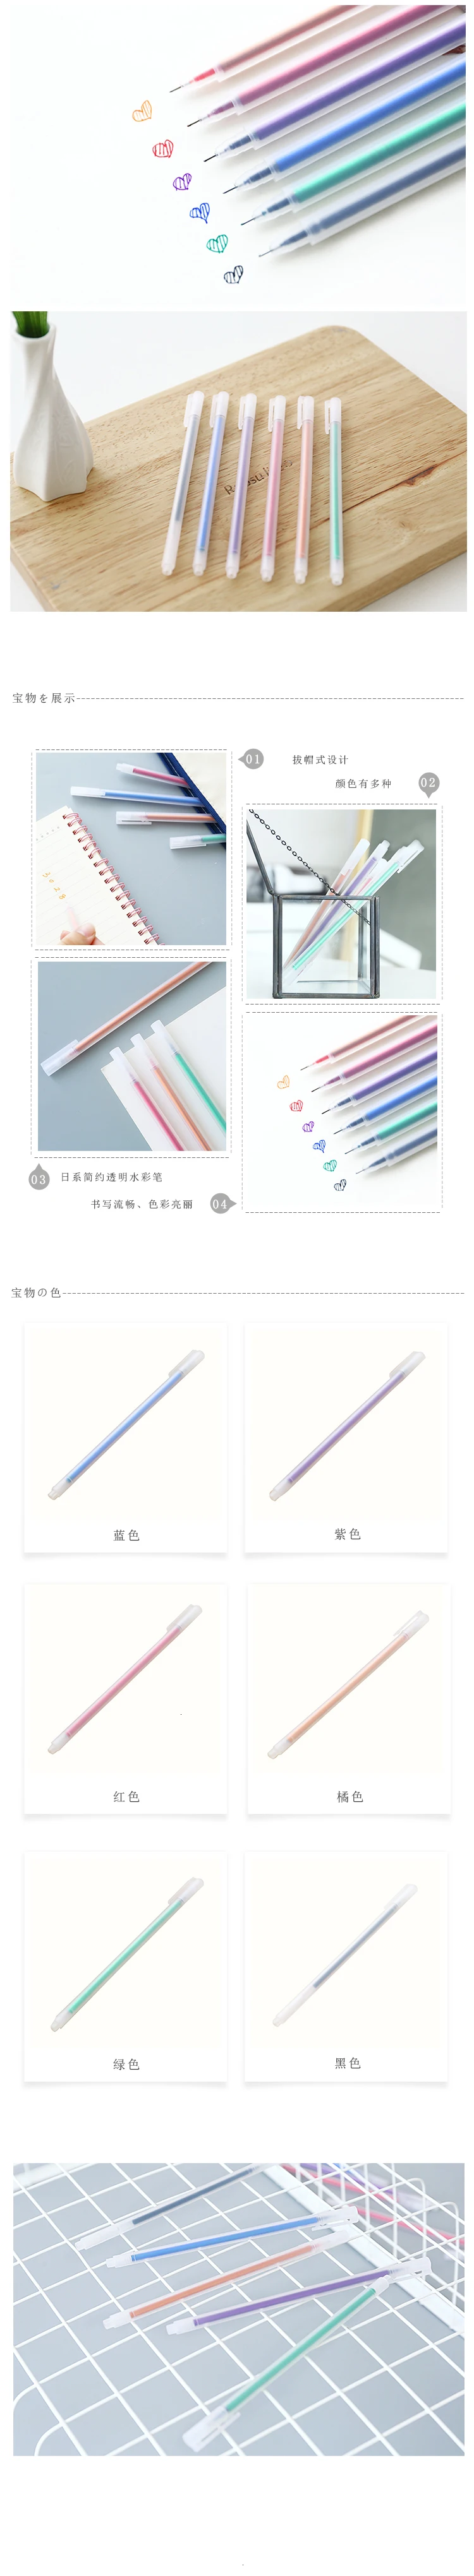 JIANWU 6 шт 0,5 мм гелевая ручка заправка простой, но элегантный Цвет гелевая ручка подарок школьные офисные принадлежности